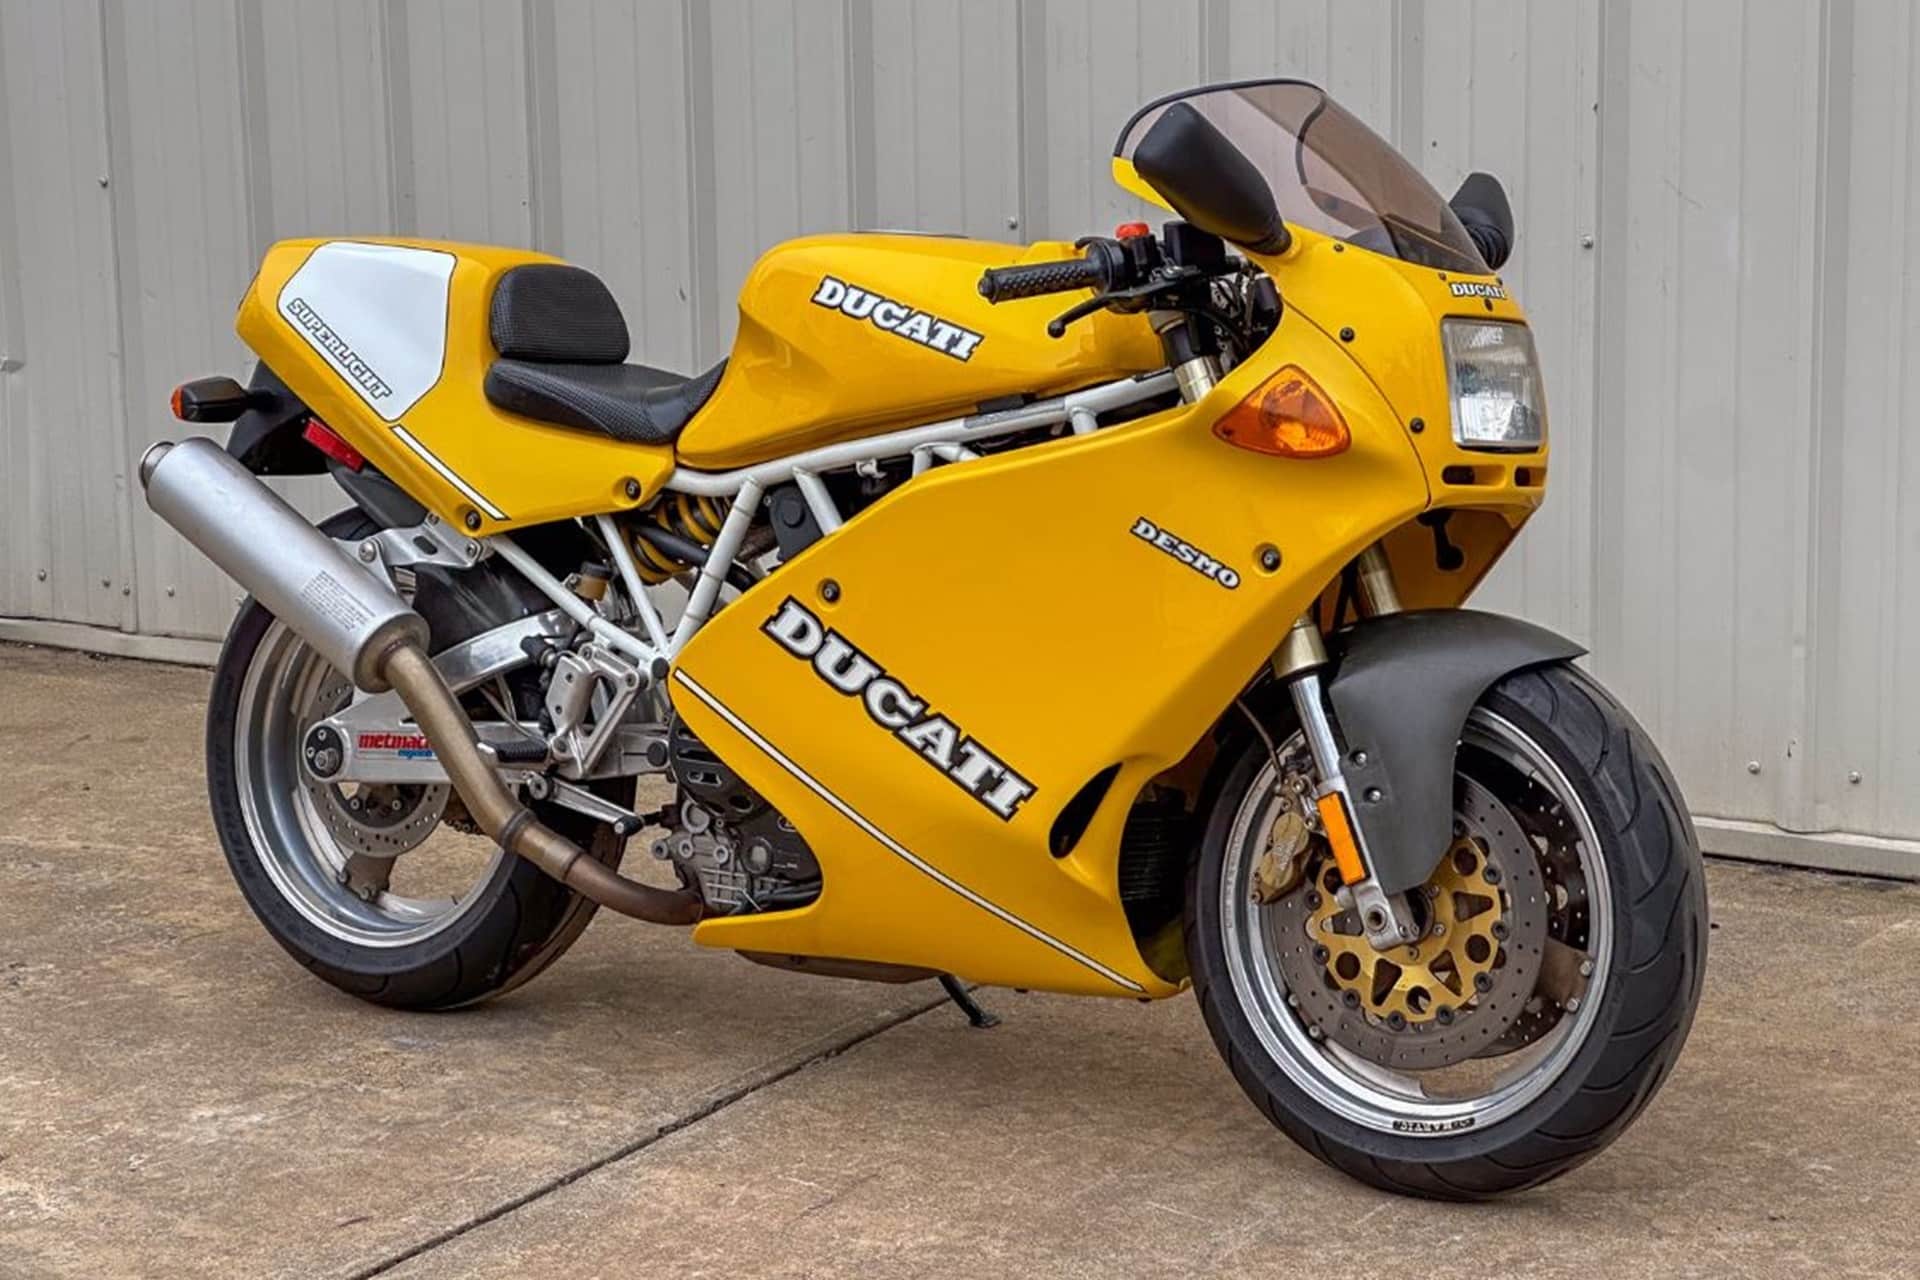 Motos de ensueño a la venta: Ducati 900 Superlight de 1993